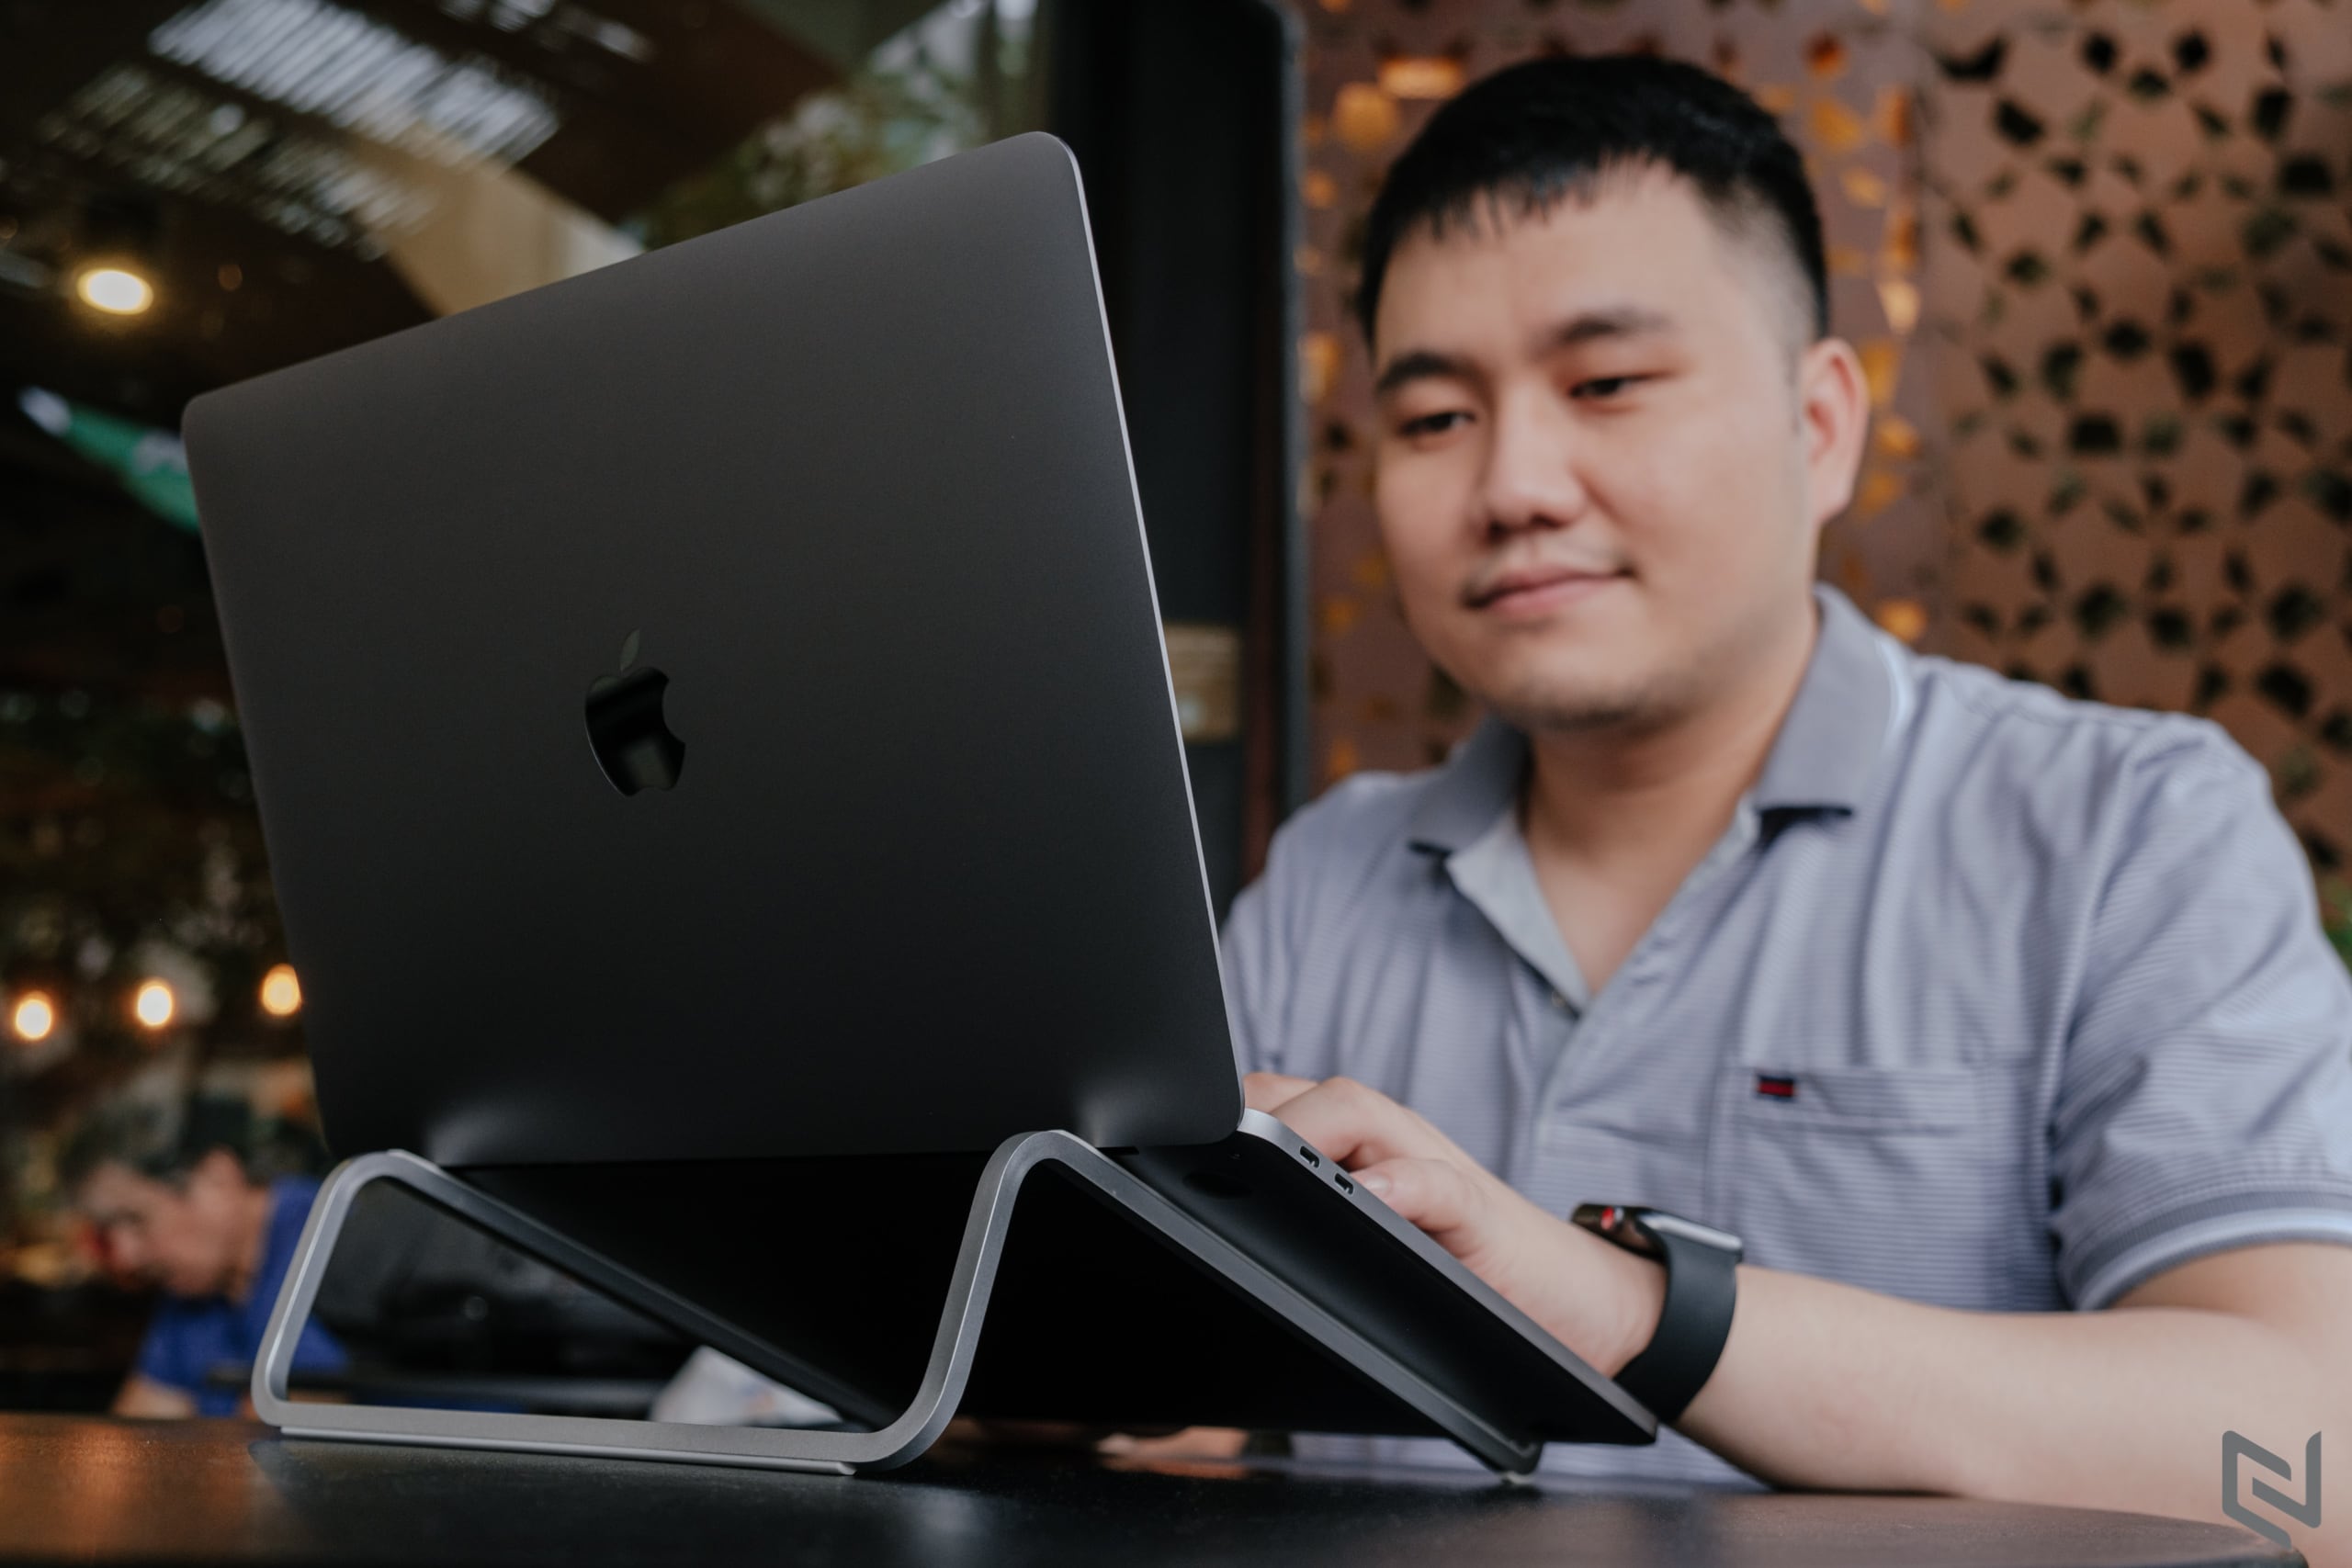 Trên tay đế tản nhiệt Rain Design mBar cho MacBook giá 750,000 VND